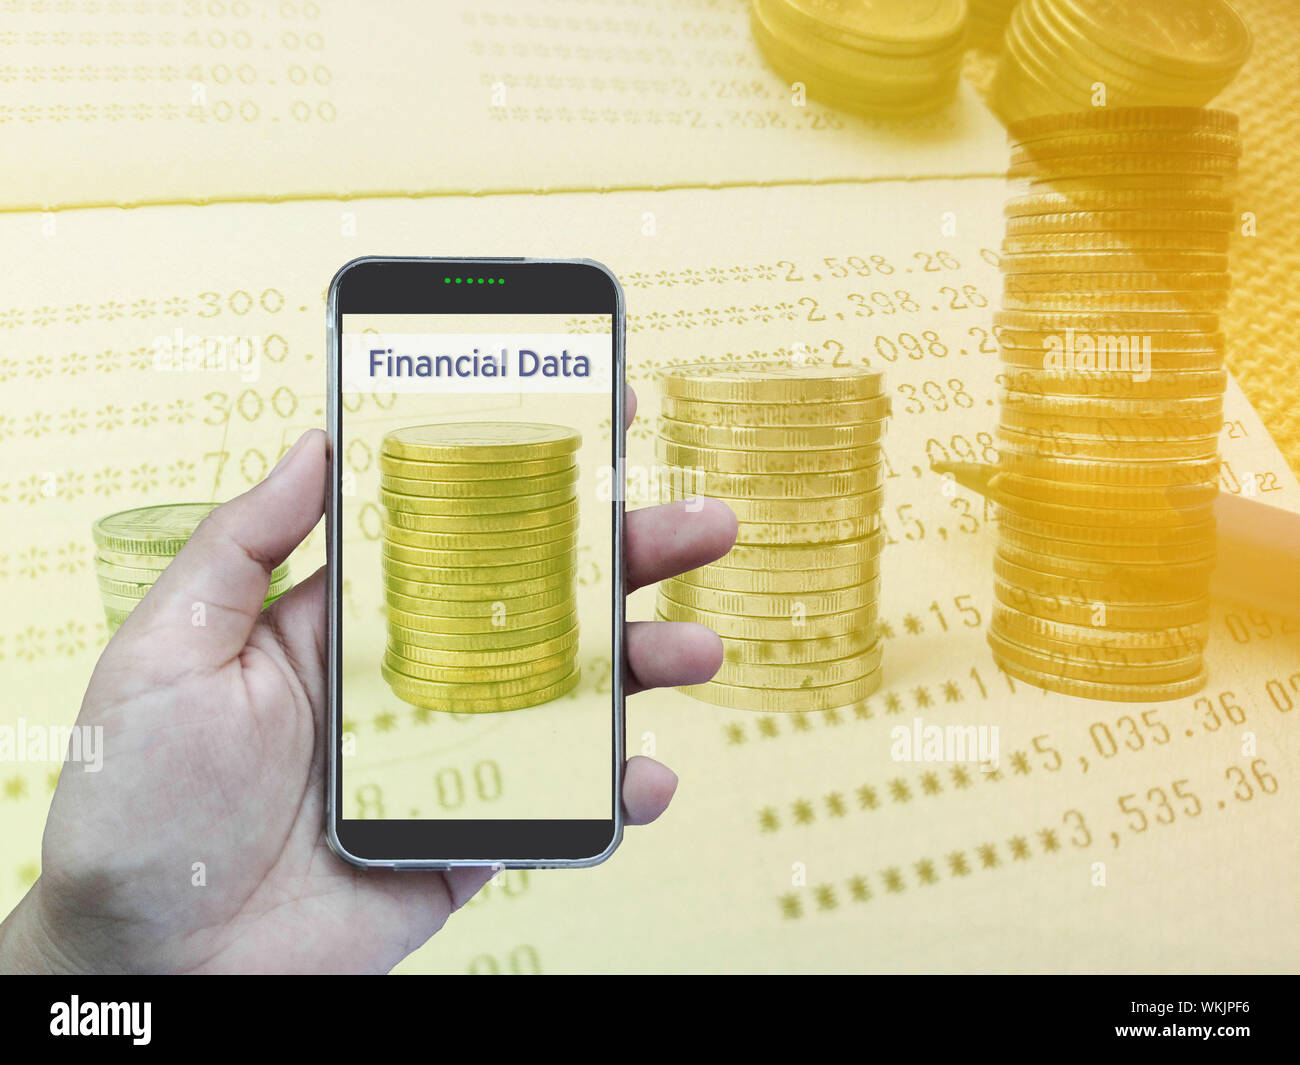 Imagen compuesta digital de mano sujetando el teléfono móvil contra cifras financieras Foto de stock